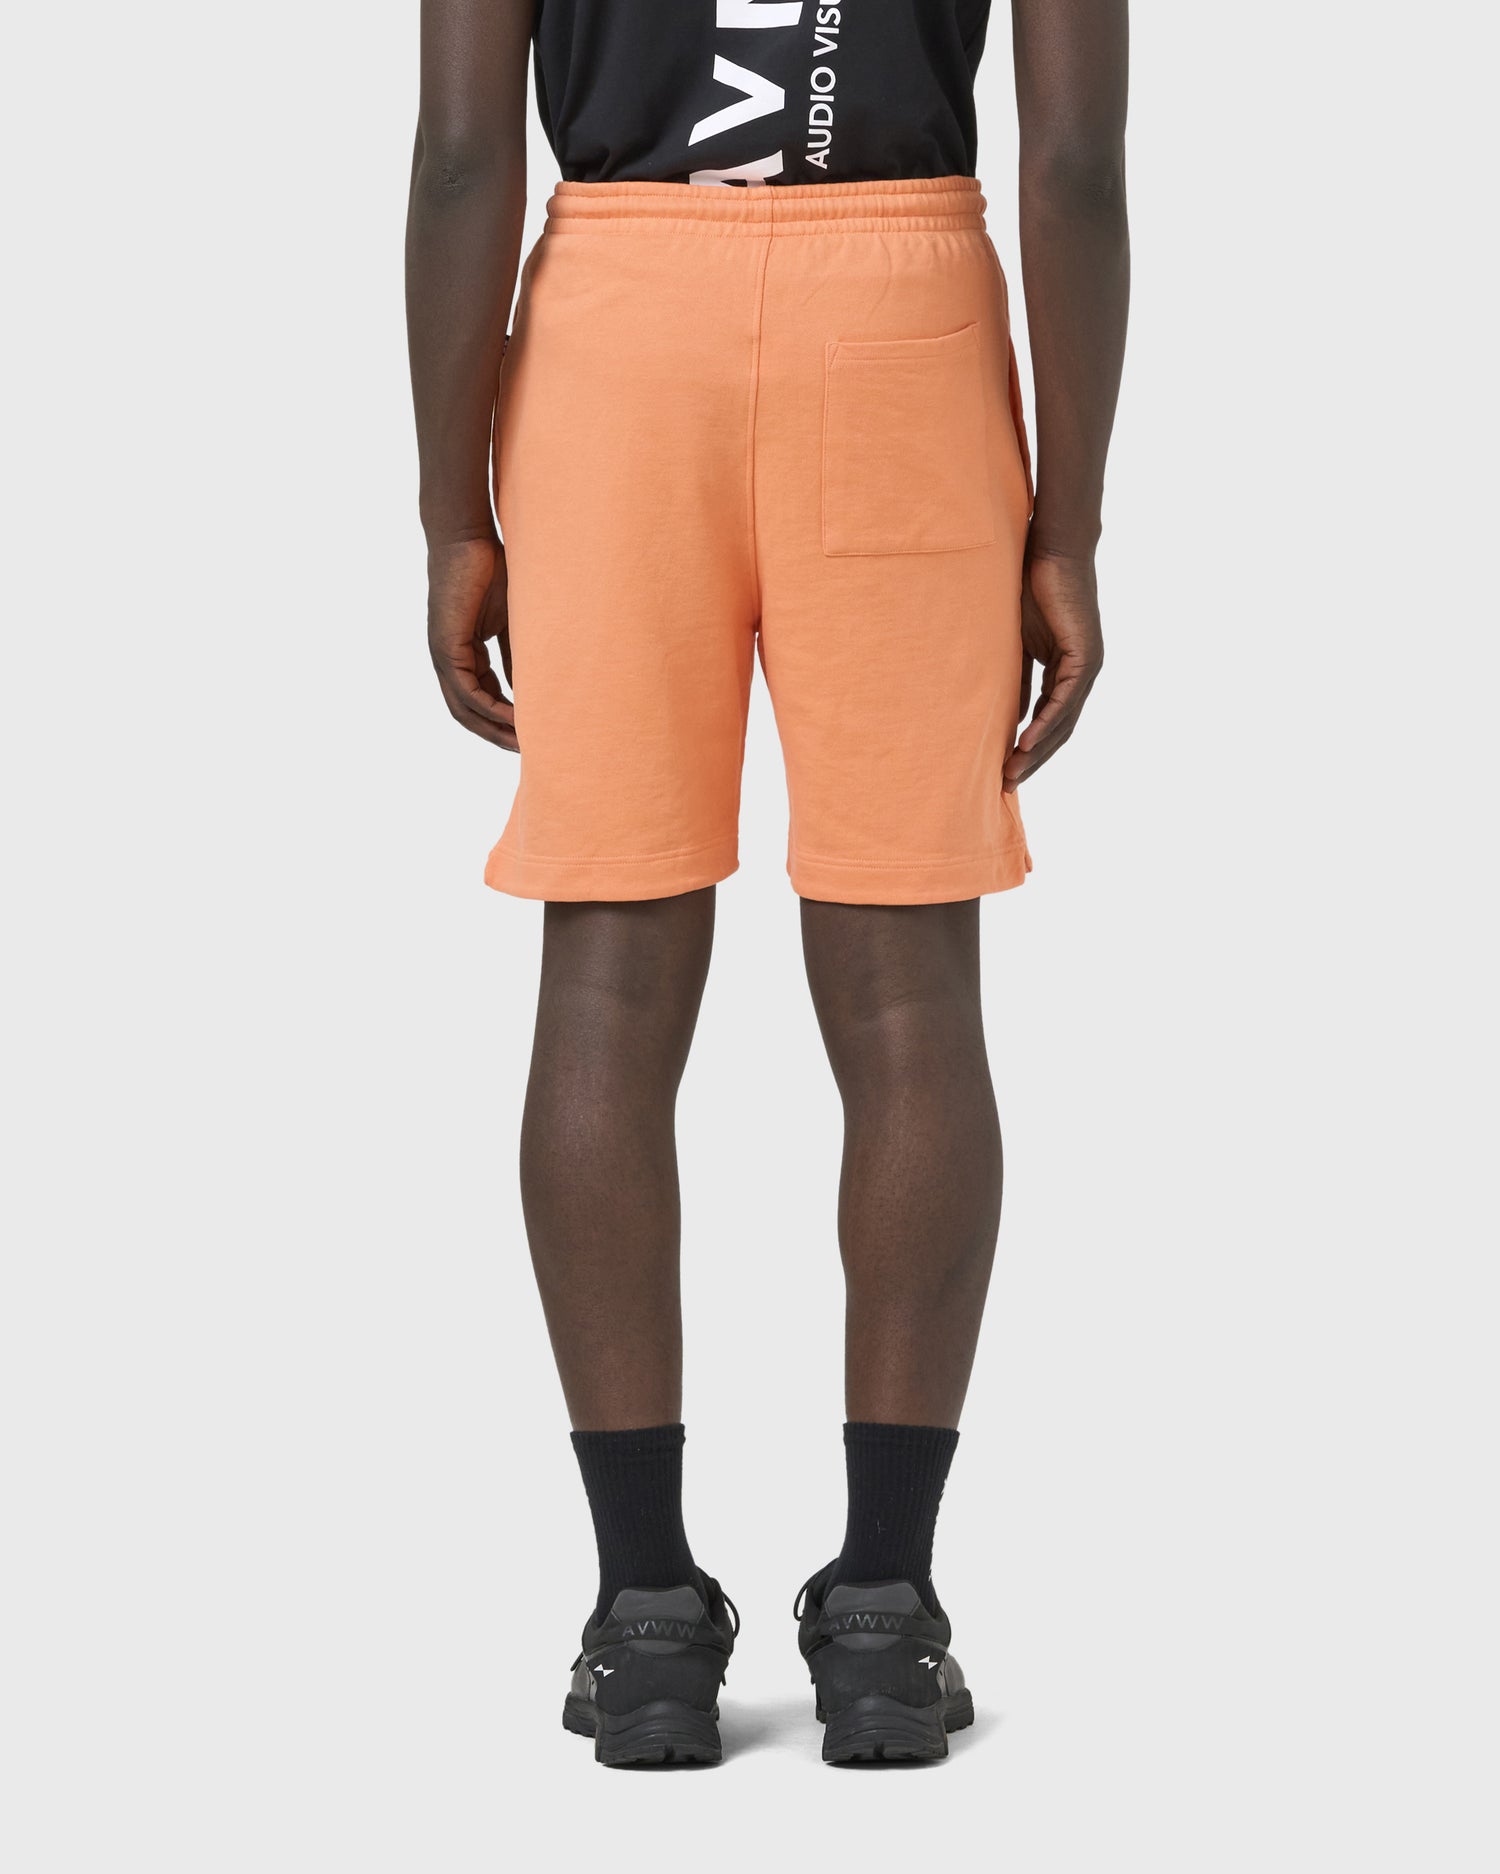 short-break-orange-avnier-durable-3-silhouette-dos - orange vibrant